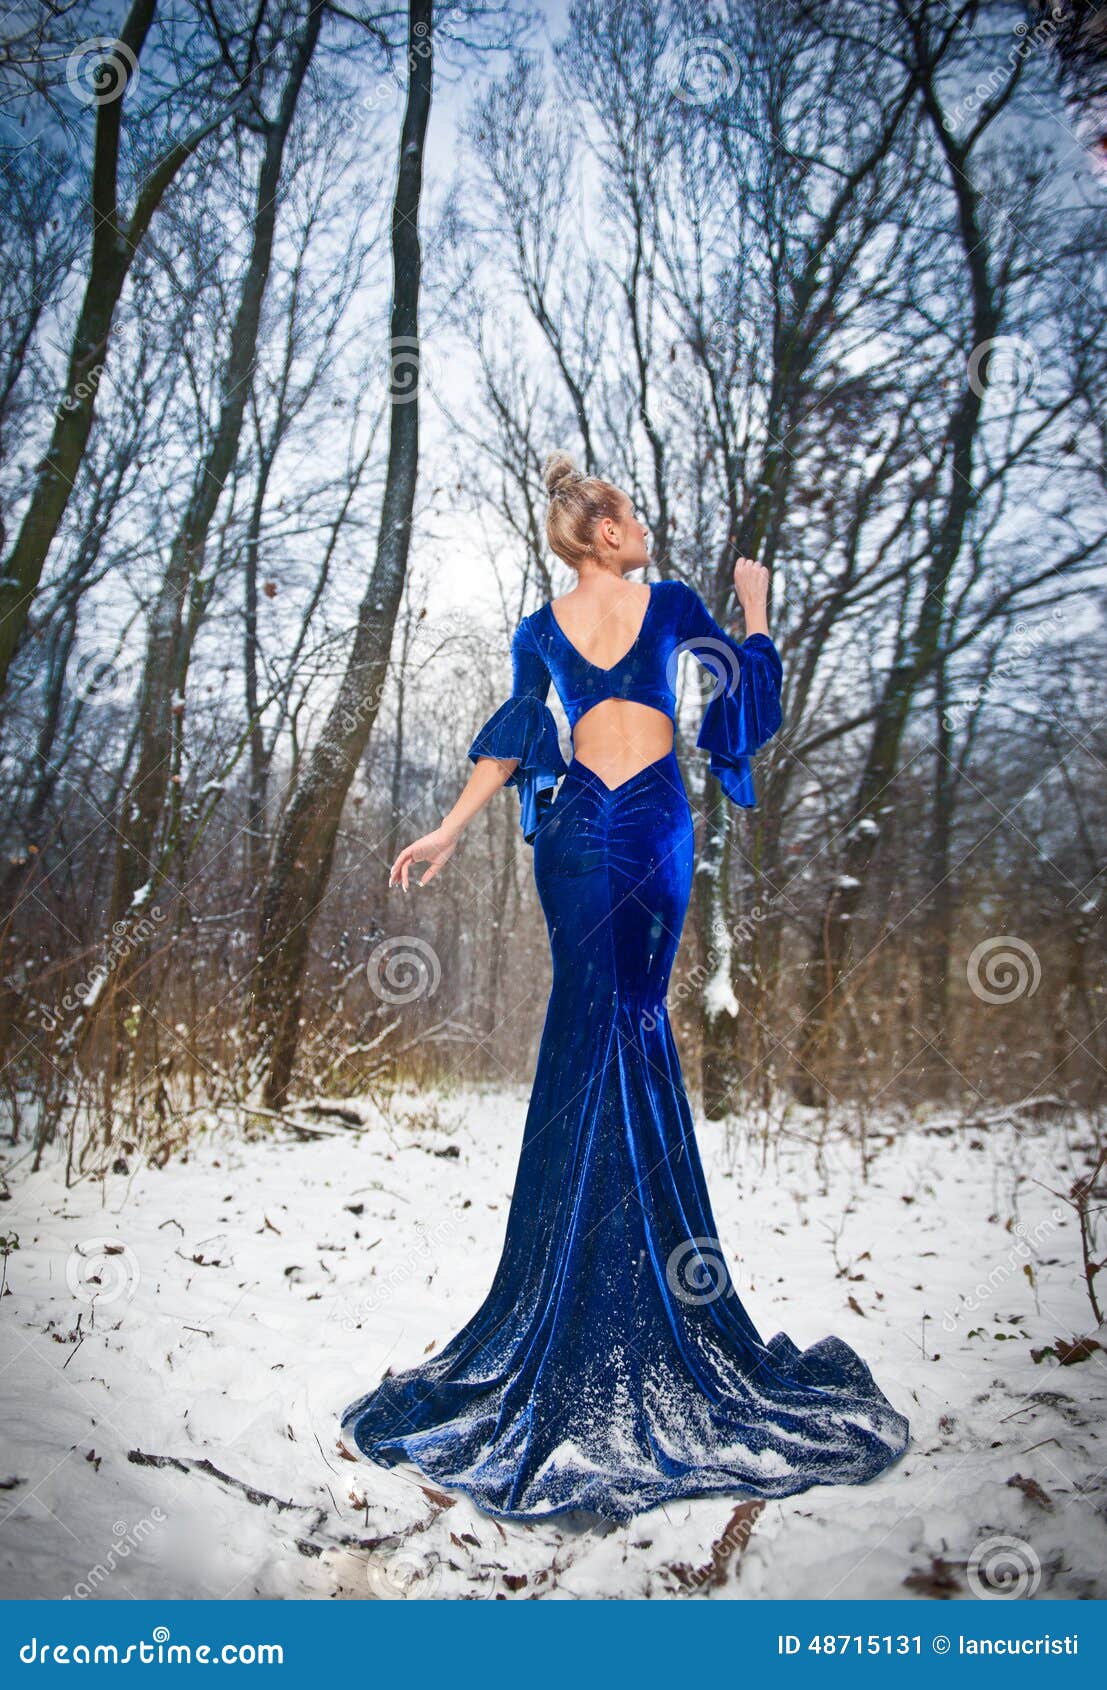 Back Side View Of Lady In Long Blue Dress Posing In Winter Scenery